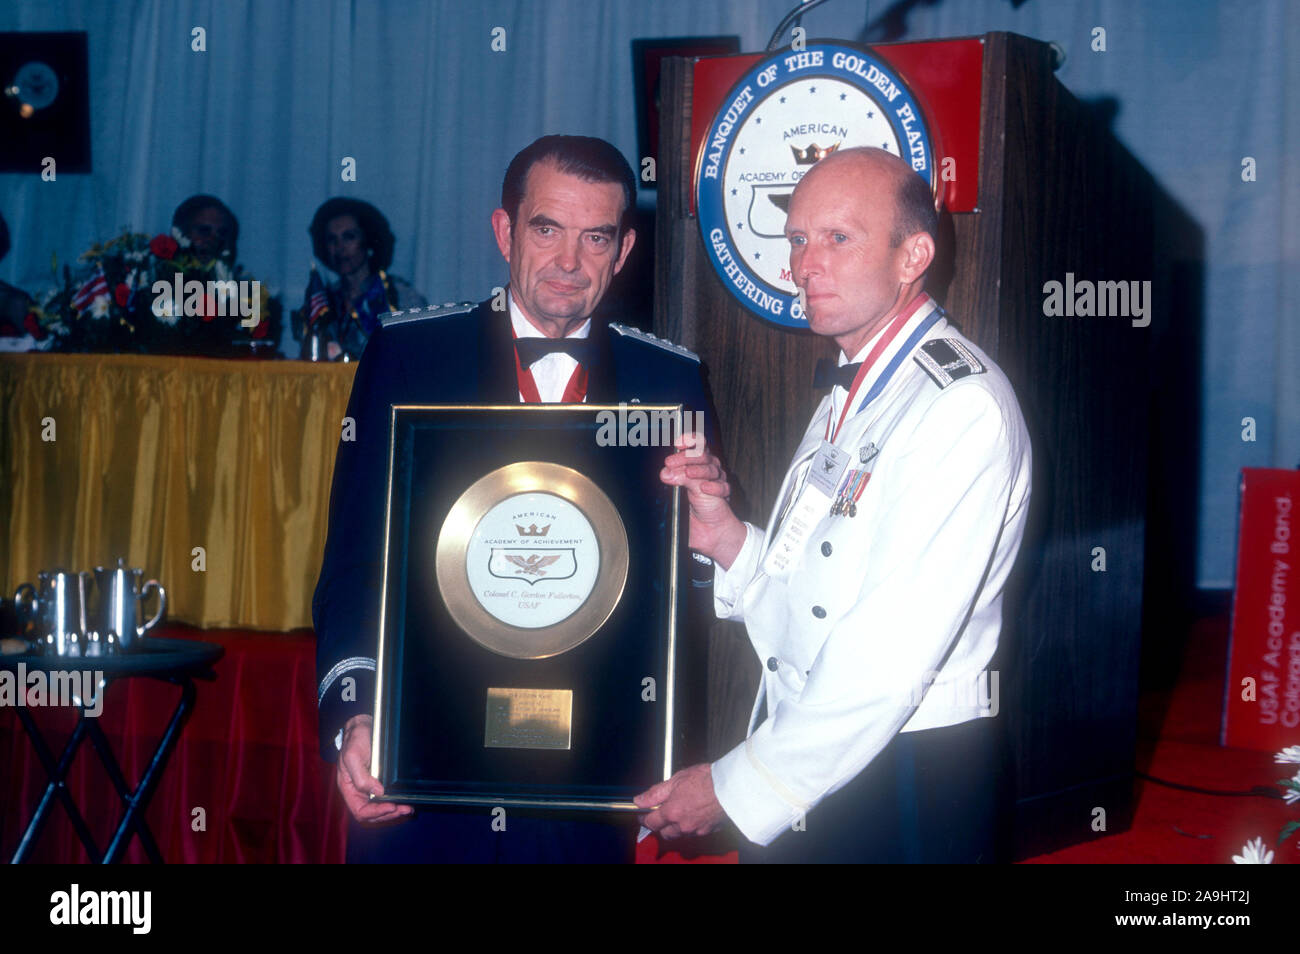 NEW ORLEANS, LA - 24 juin : le Colonel C. Gordon Fullerton, USAF reçoit une plaque d'or du général David Jones pour 'Astronaut Hall of Fame' pendant la réalisation de l'Académie 1982 Plaque Or Awards le 24 juin 1982 à la Nouvelle Orléans, Louisiane. (Photo de Hy Peskin) Banque D'Images